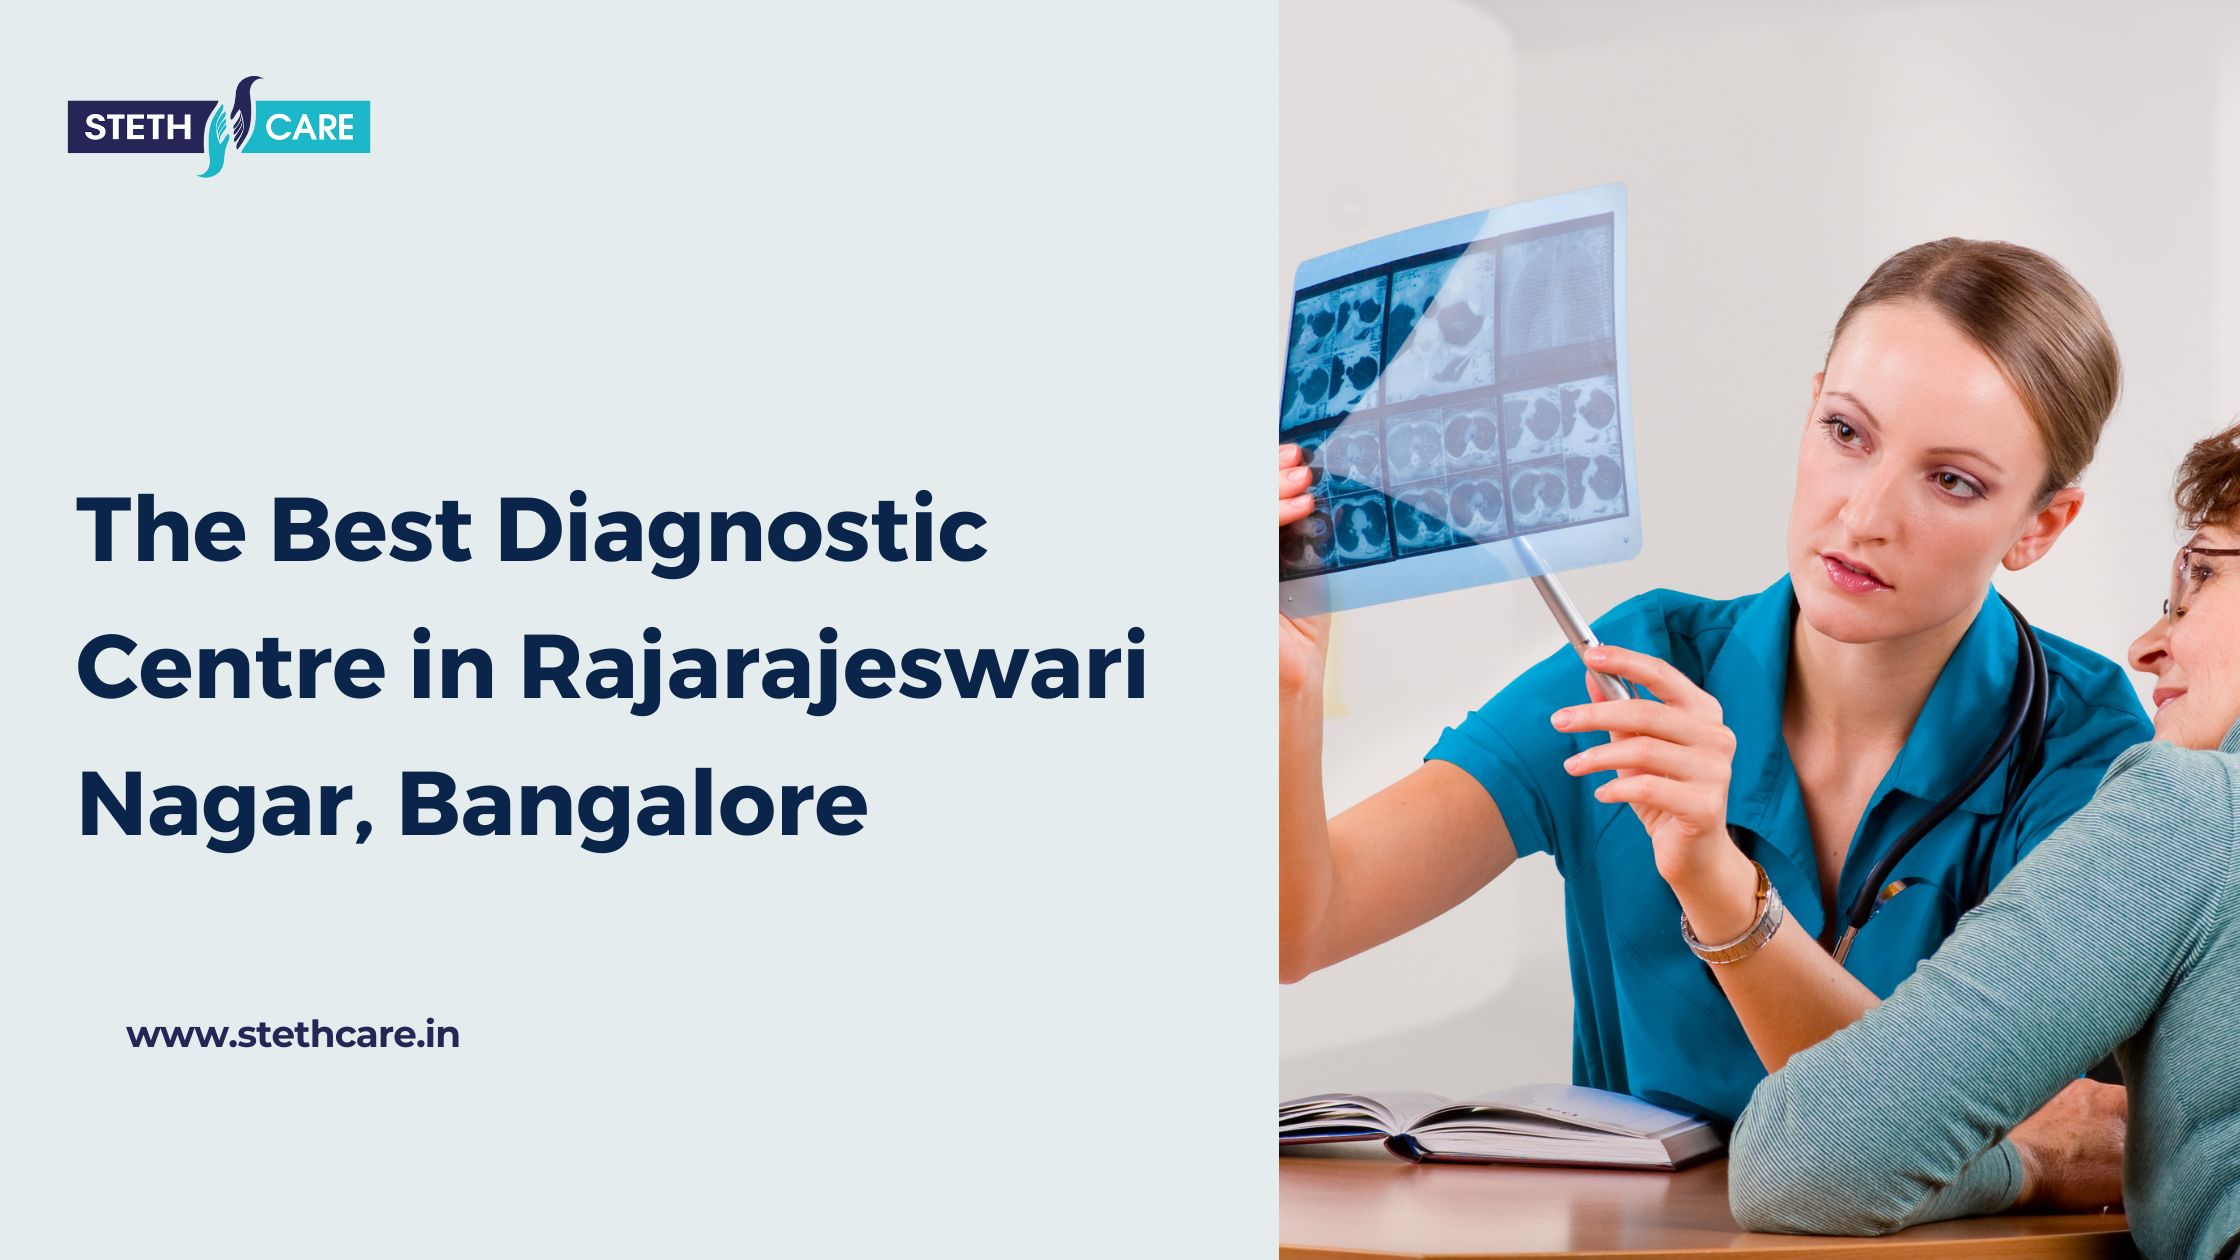 The Best Diagnostic Centre in Rajarajeswari Nagar, Bangalore